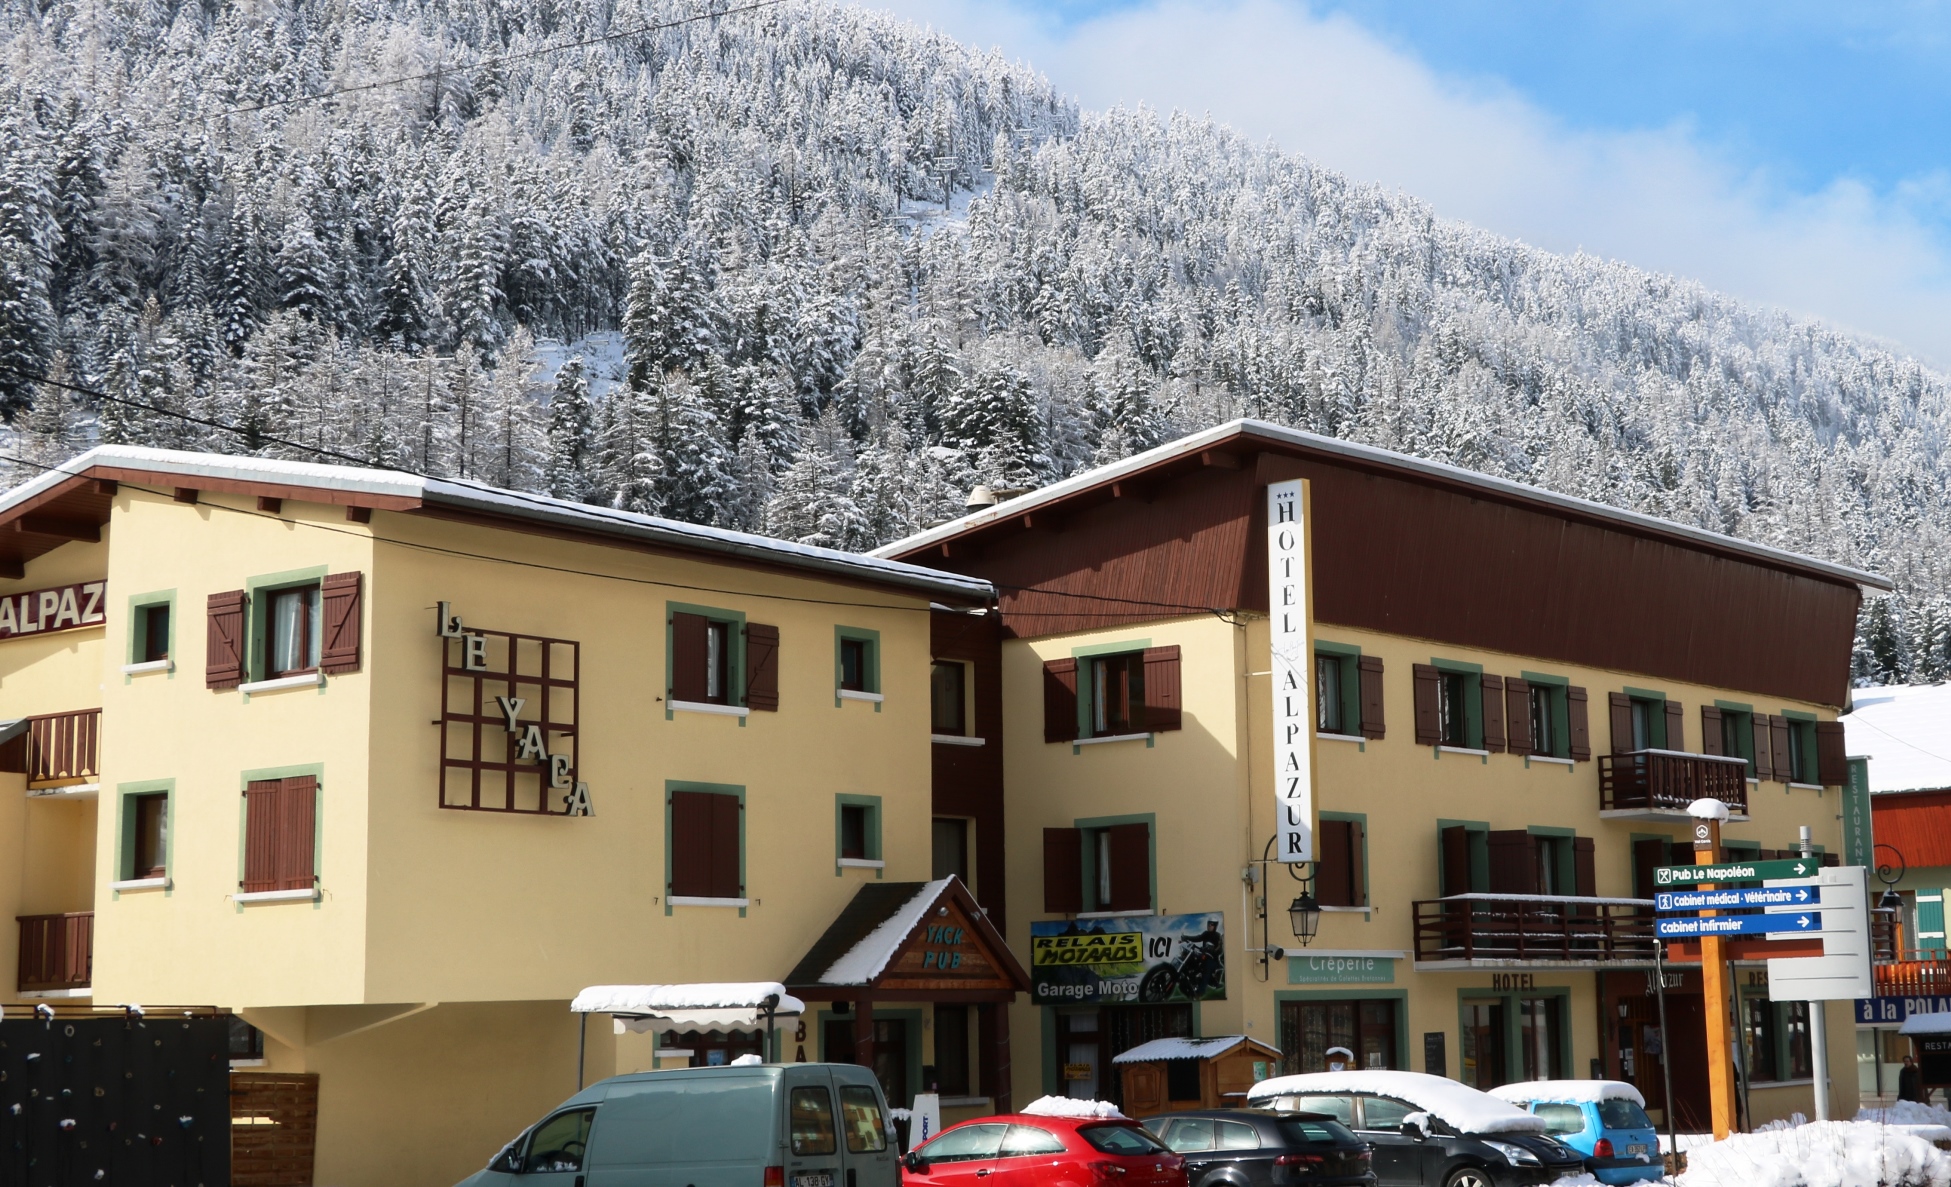 hotel alpazur - enneigement en mars (1)